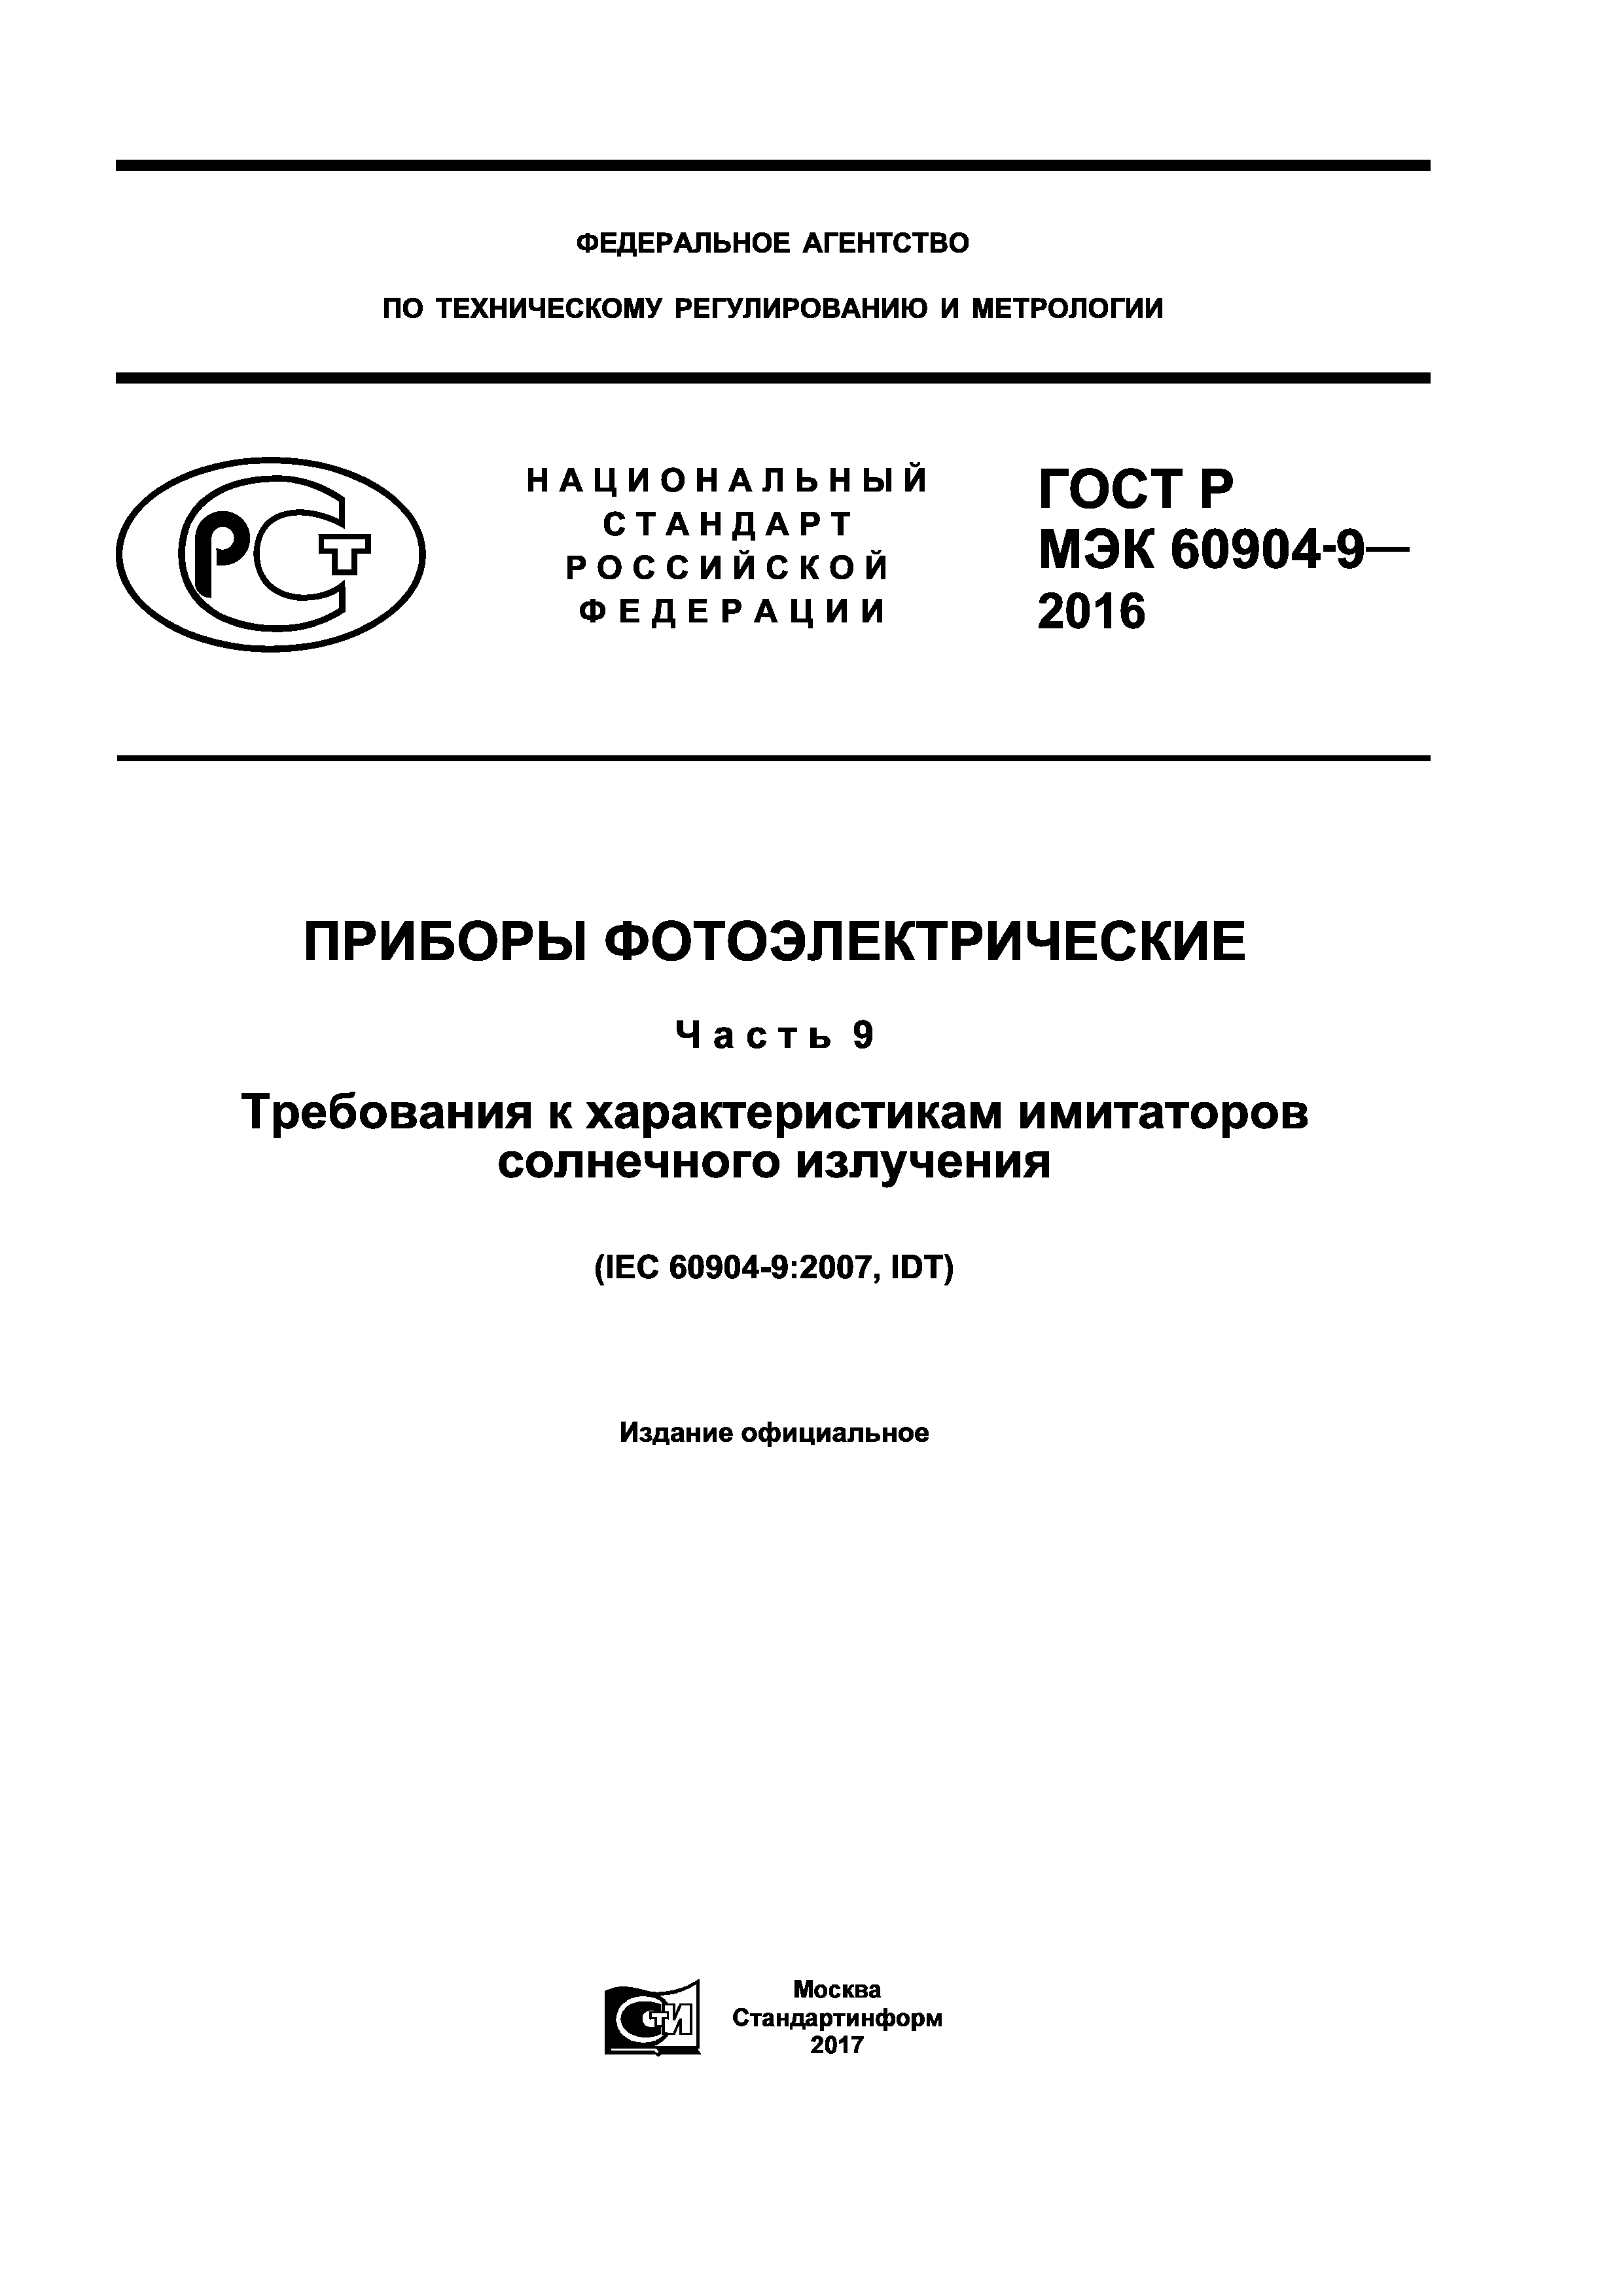 ГОСТ Р МЭК 60904-9-2016